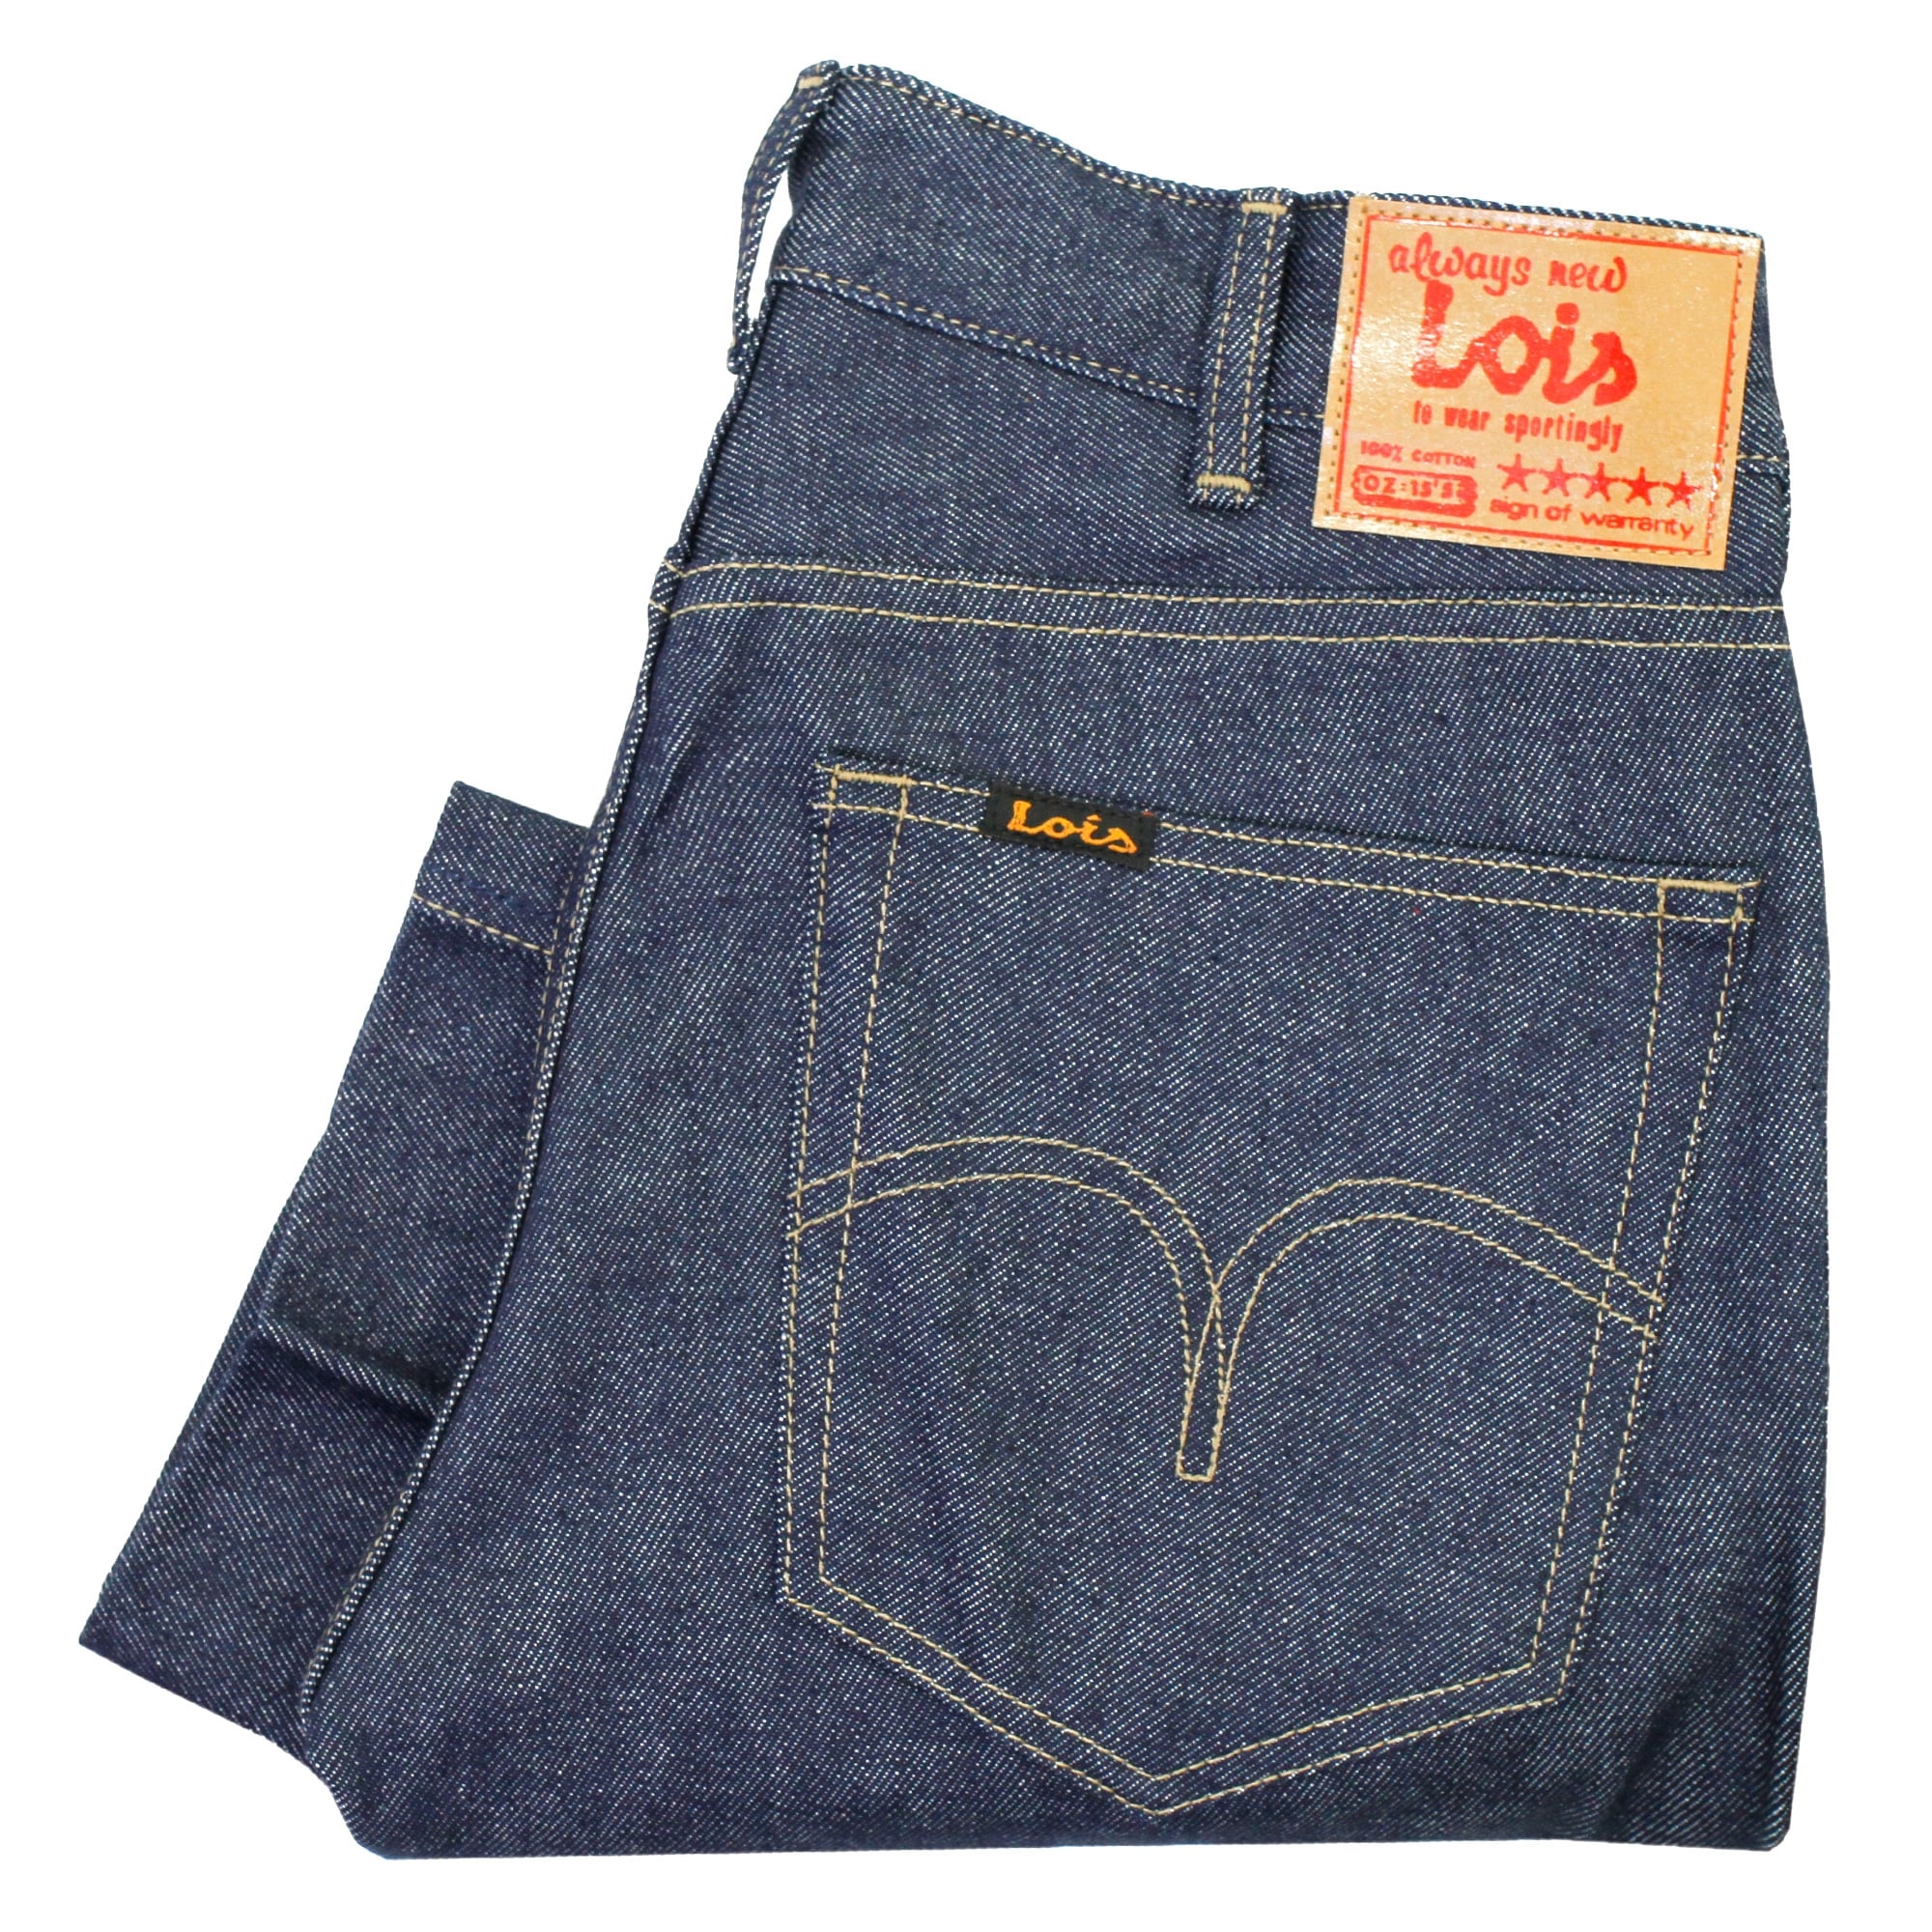 Ofertas Lois Jeans